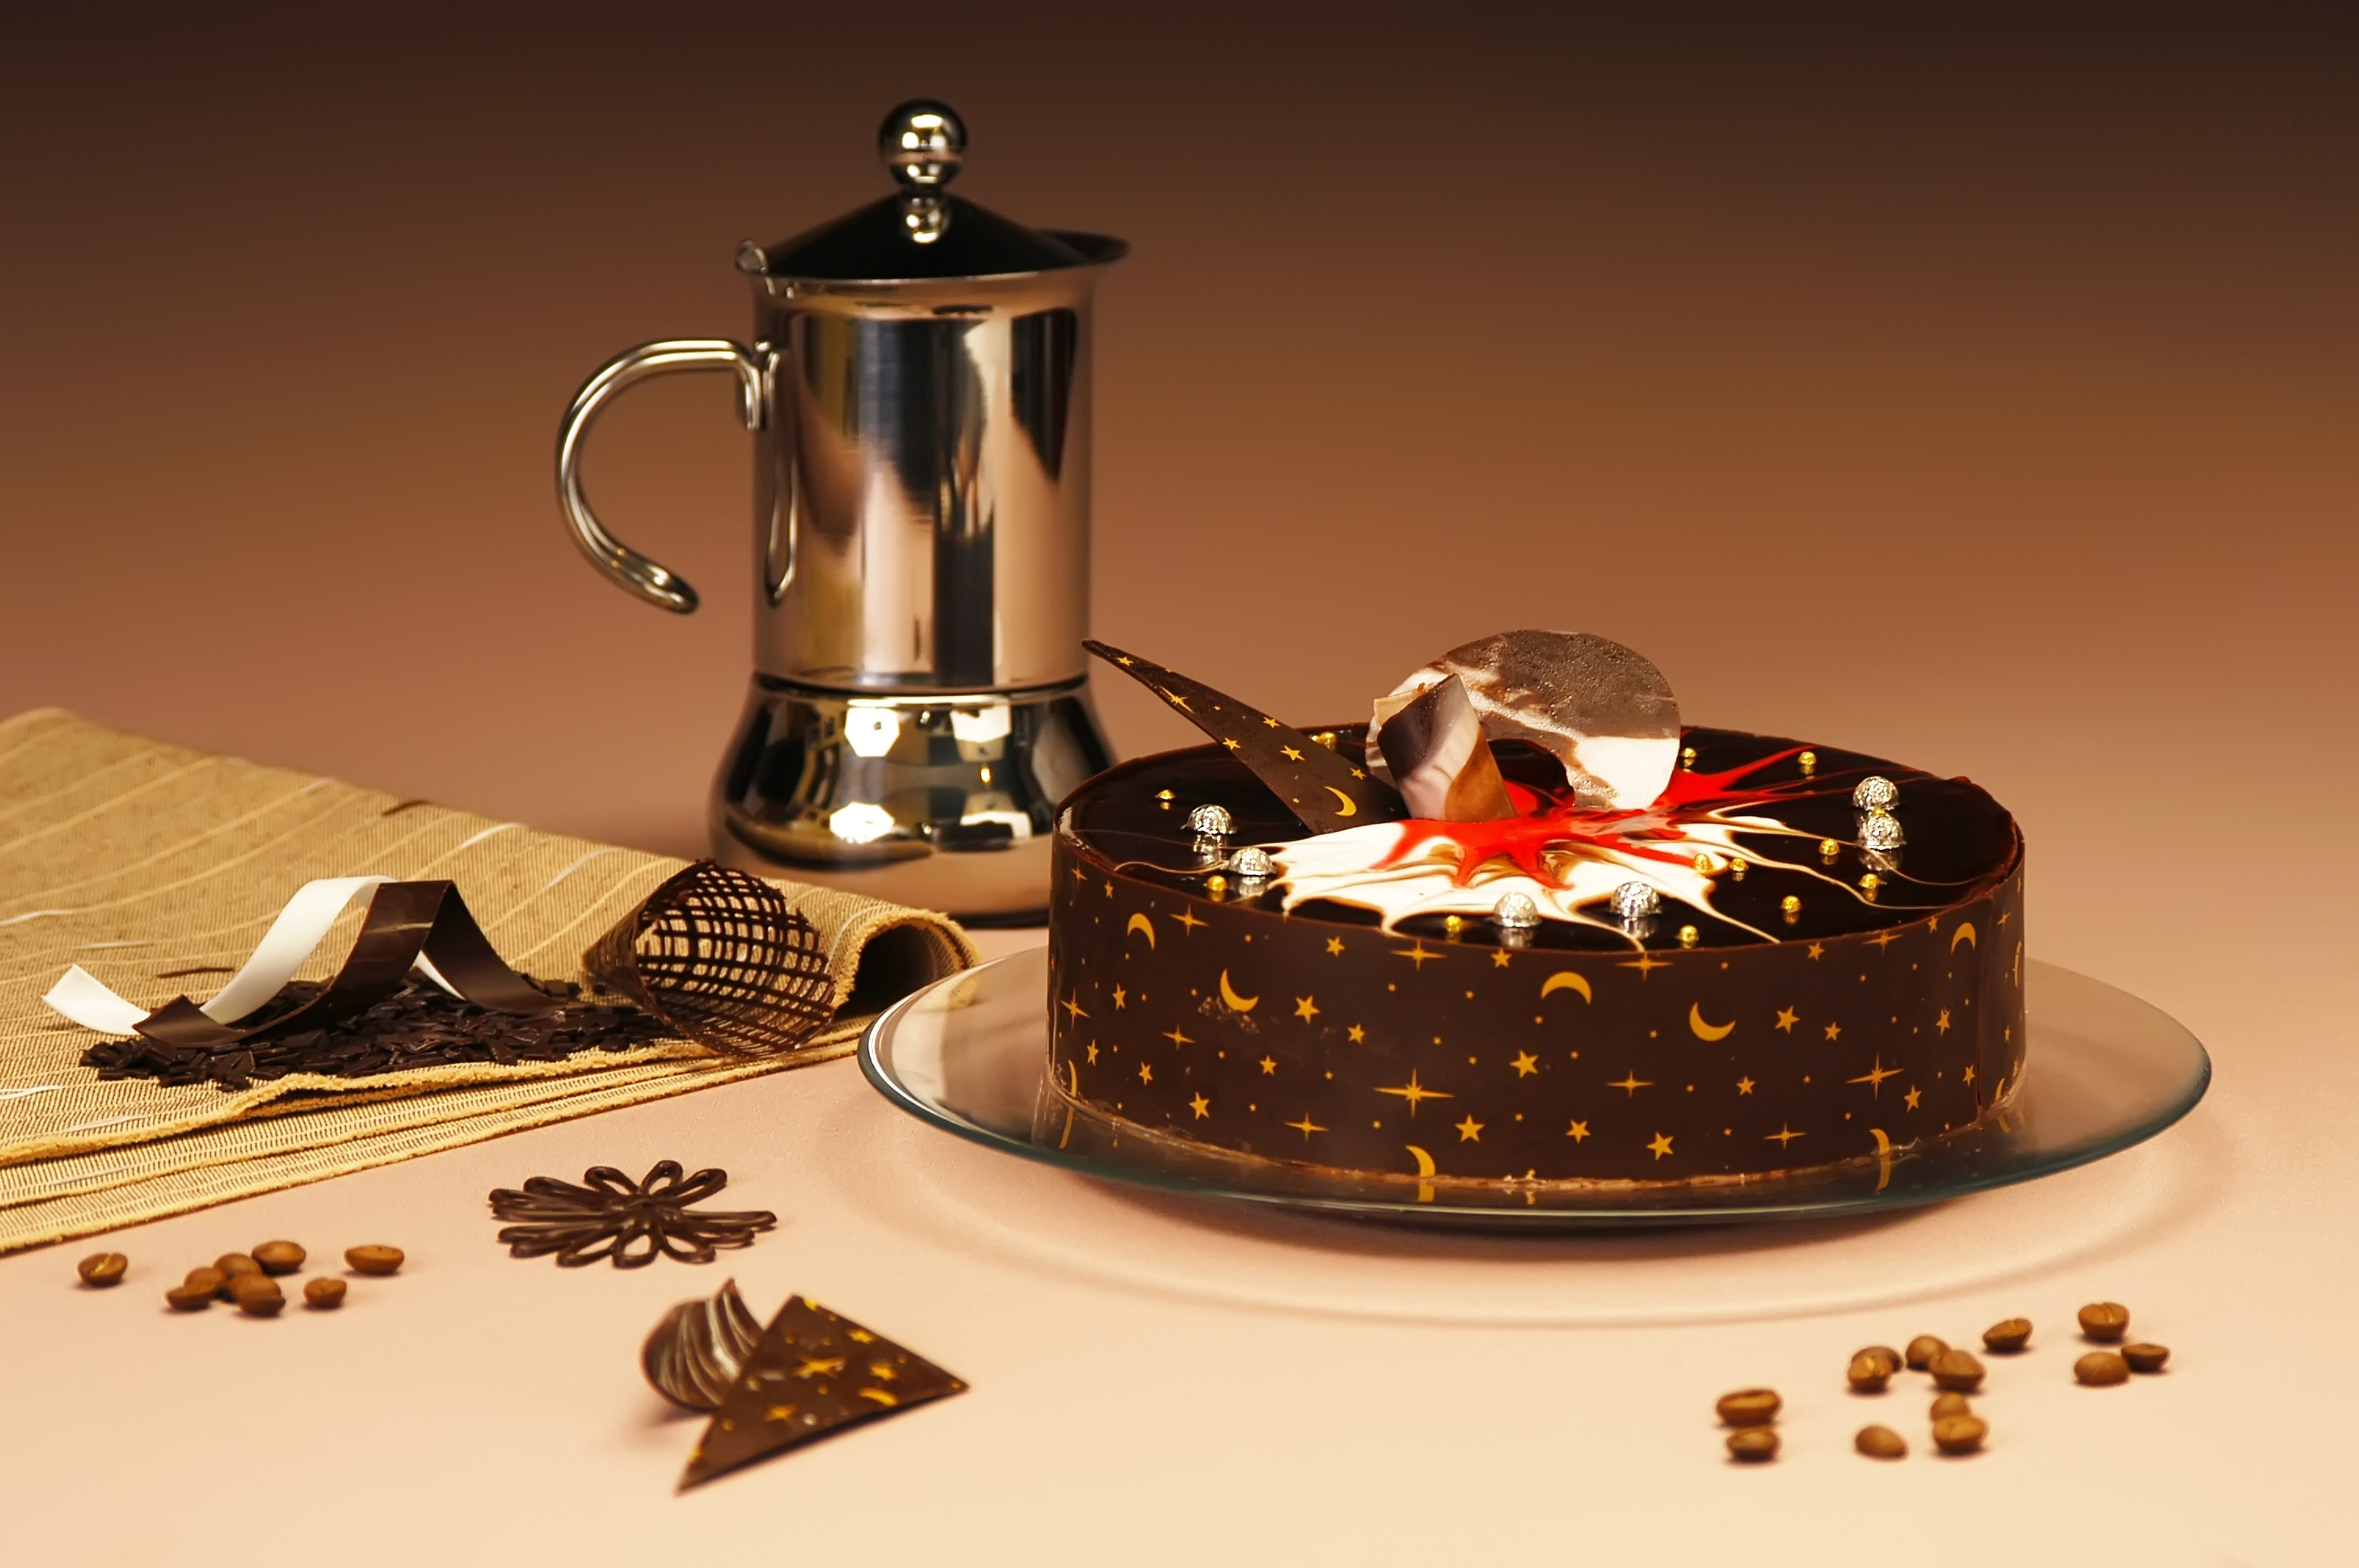 Най хубавият подарък за всички е домашно приготвена какаова тортаНеобходими Продукти●